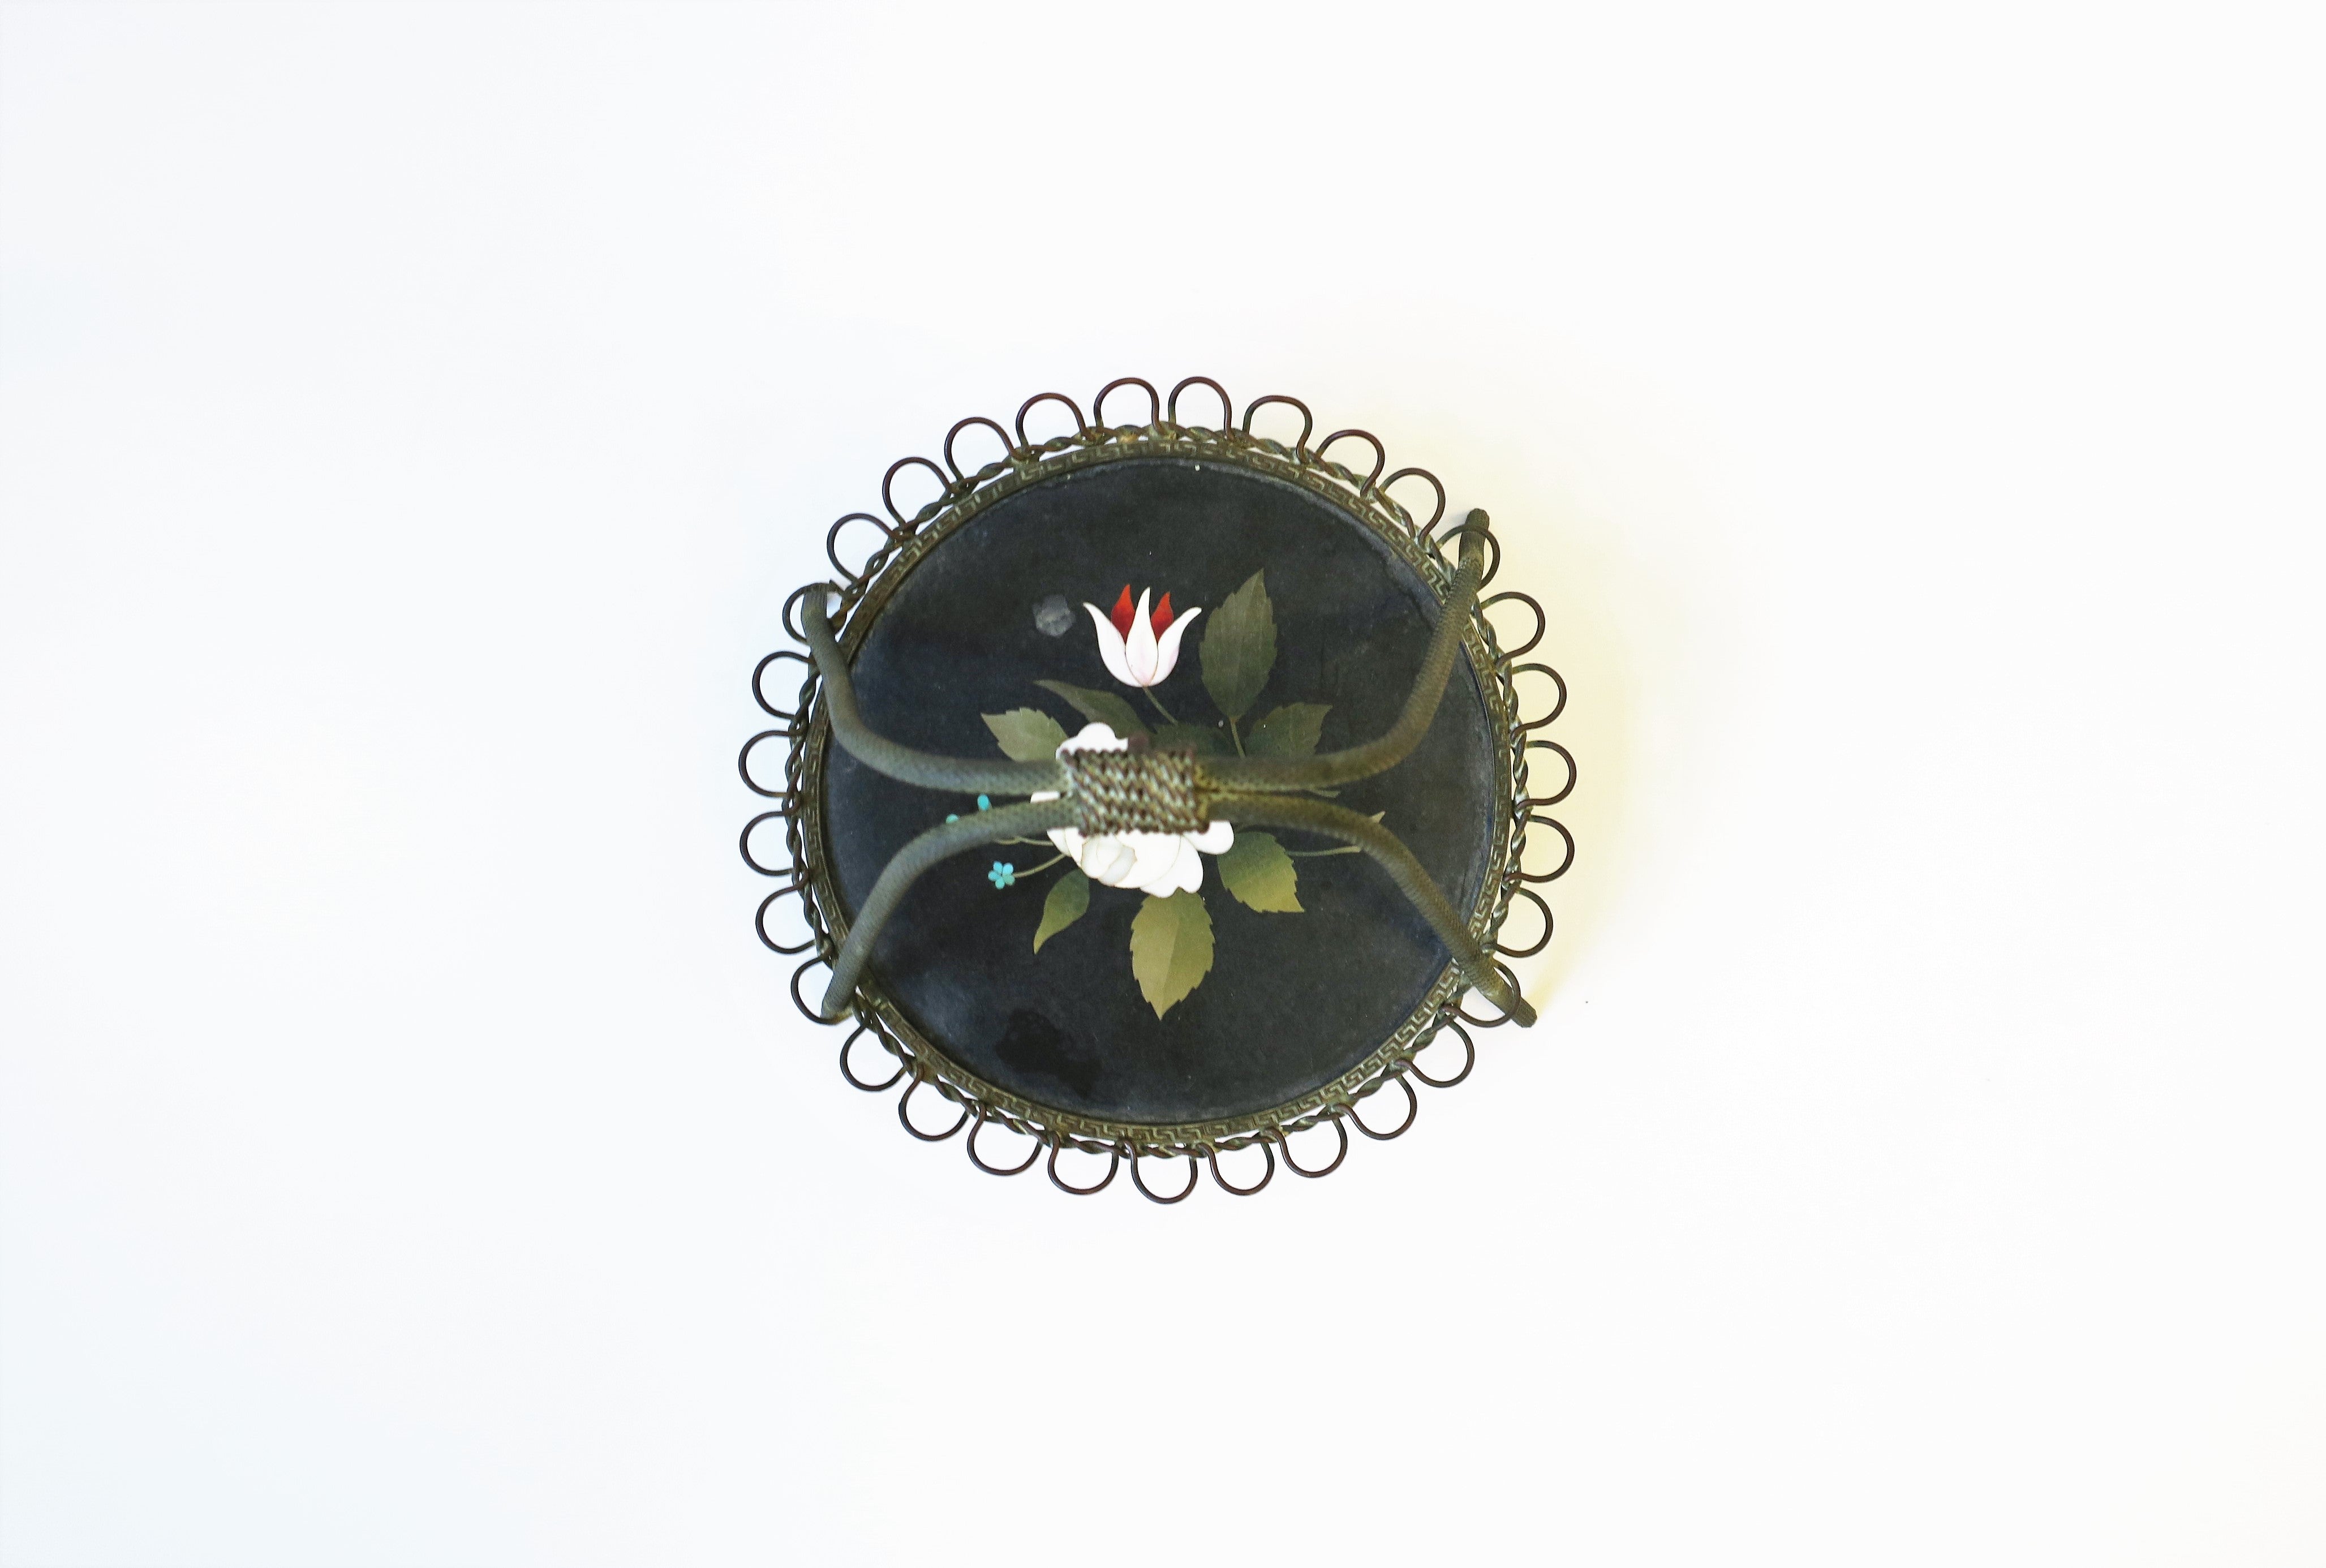 Très beau support de montre de poche italien en Pietra Dura avec relief de fleurs et de feuilles, vers le début du XXe siècle, Florence, Italie. La pièce est en bronze ou en laiton et repose sur une base ronde en marbre noir avec des incrustations